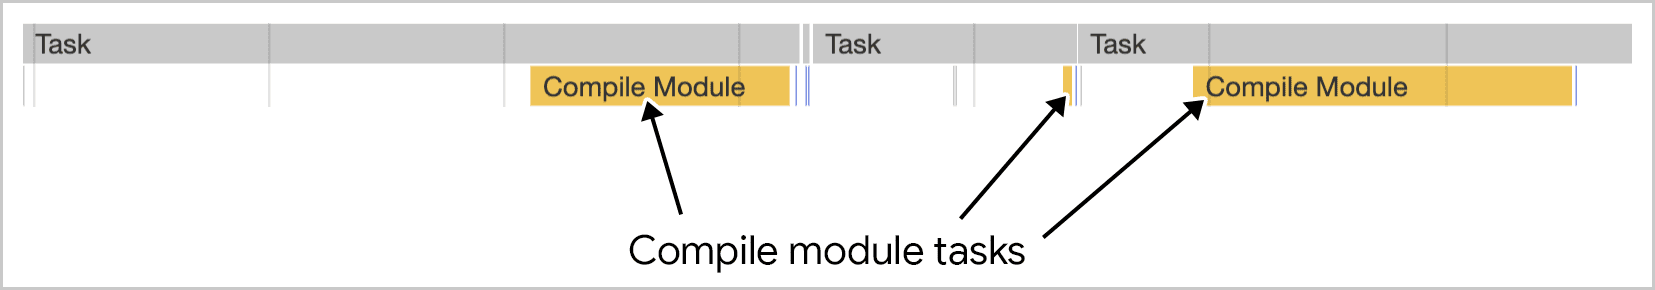 Компиляция модулей выполняет несколько задач, как это показано в Chrome DevTools.